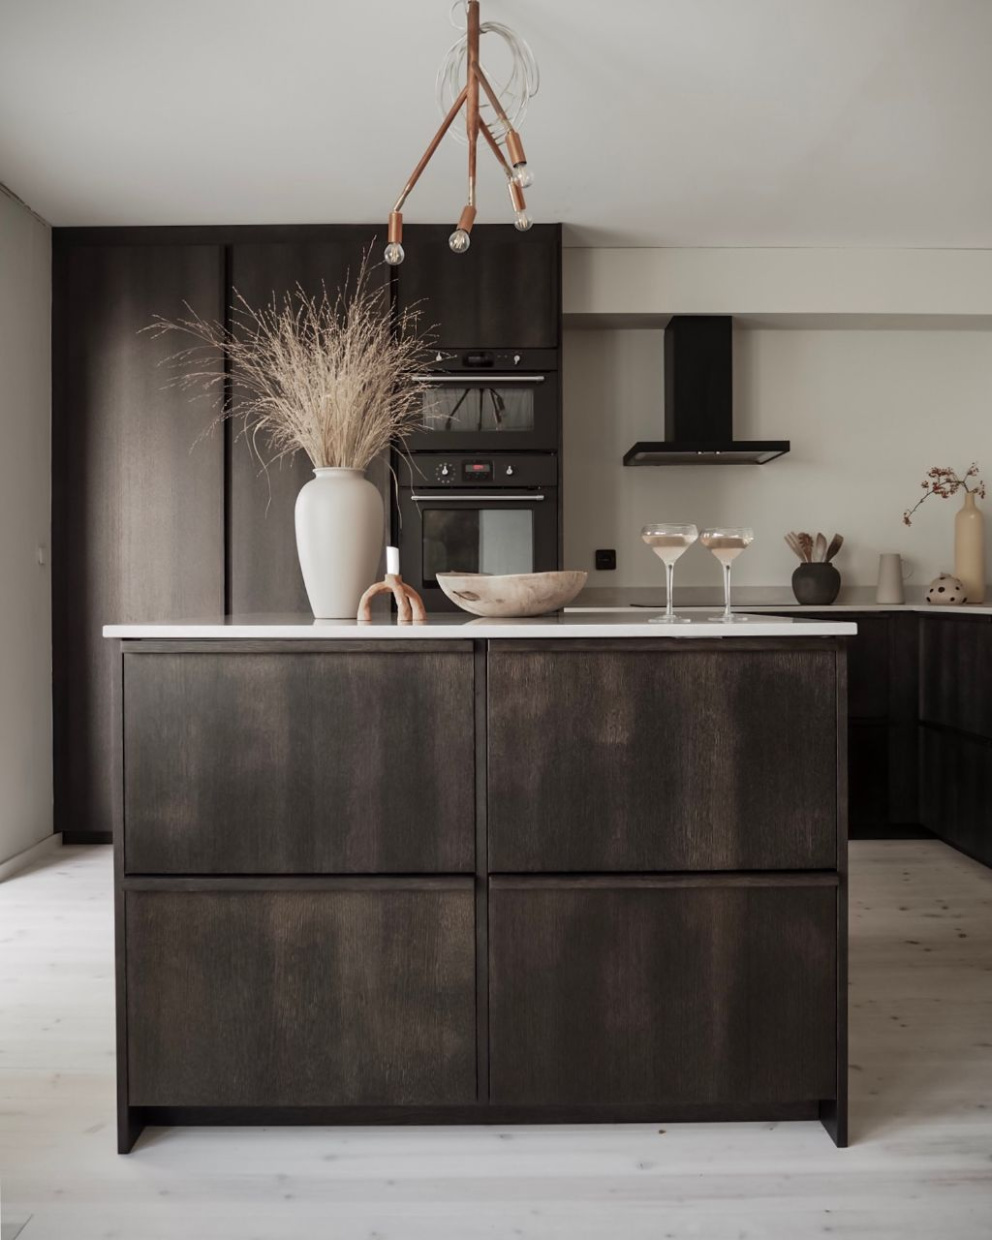 Kuchyň je v moderním minimalistickém dekoru. 